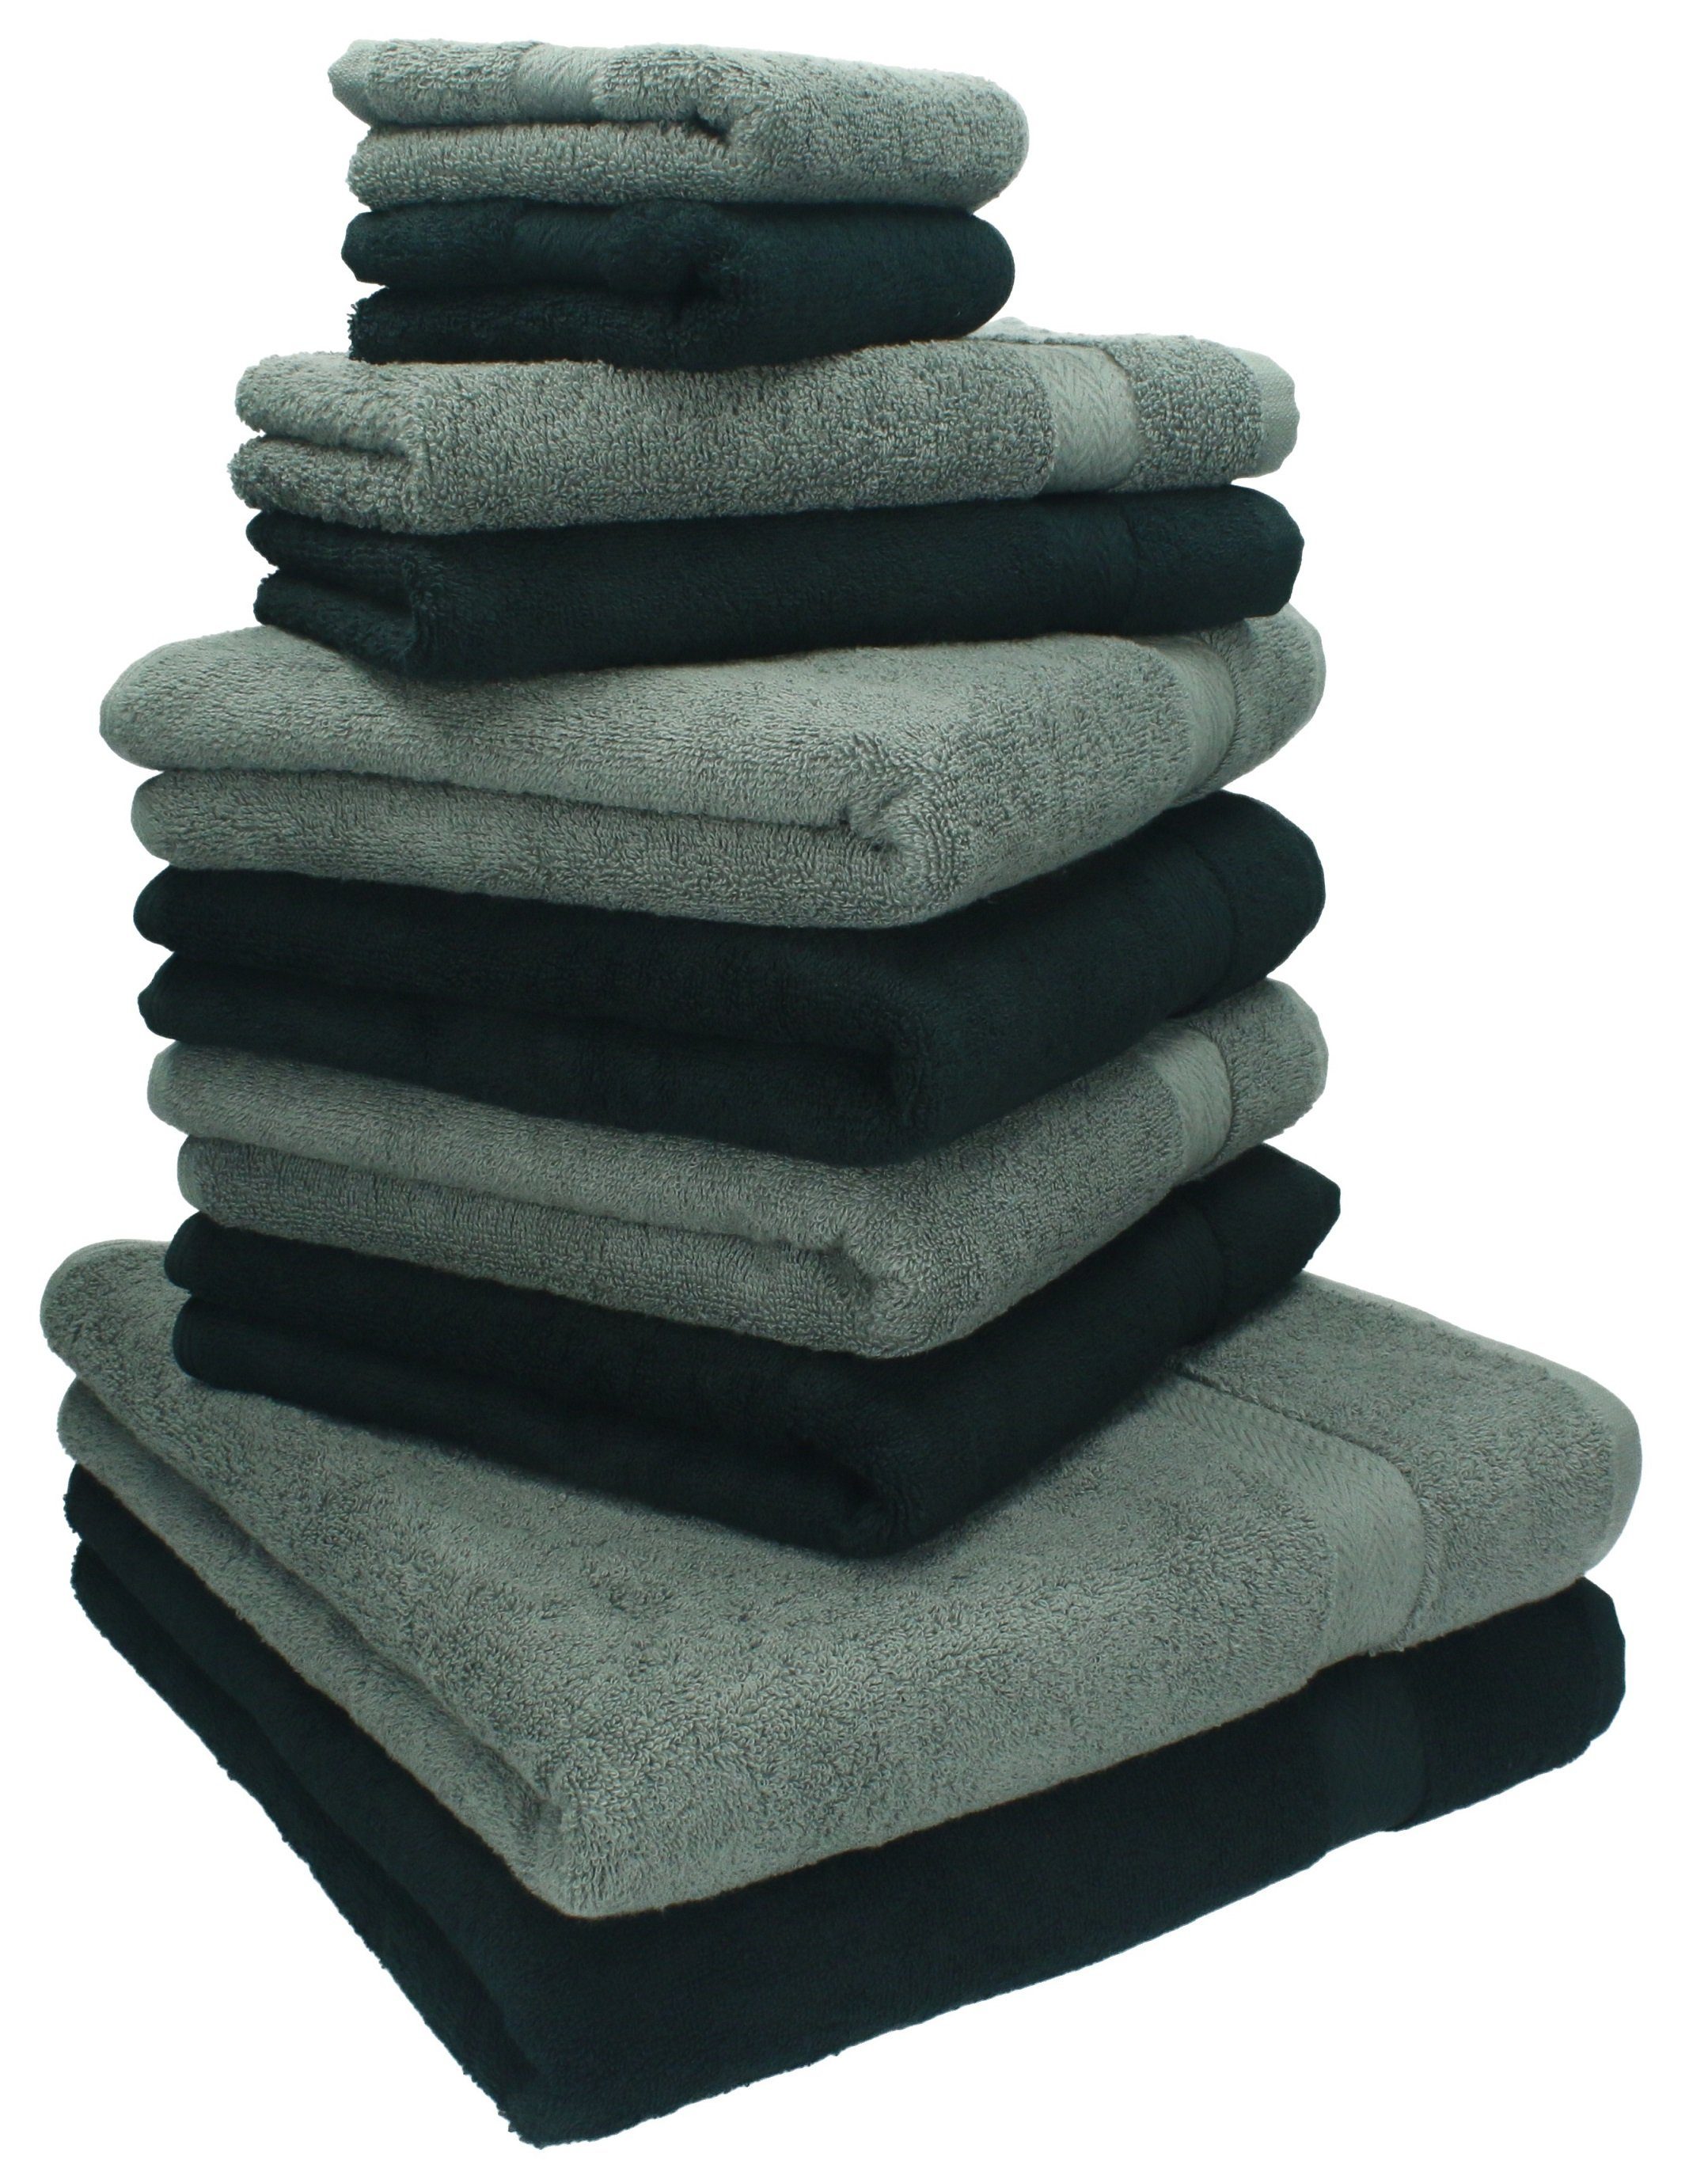 Betz Handtuch Set 10-TLG. Handtuch-Set Classic Farbe anthrazit und schwarz, 100% Baumwolle